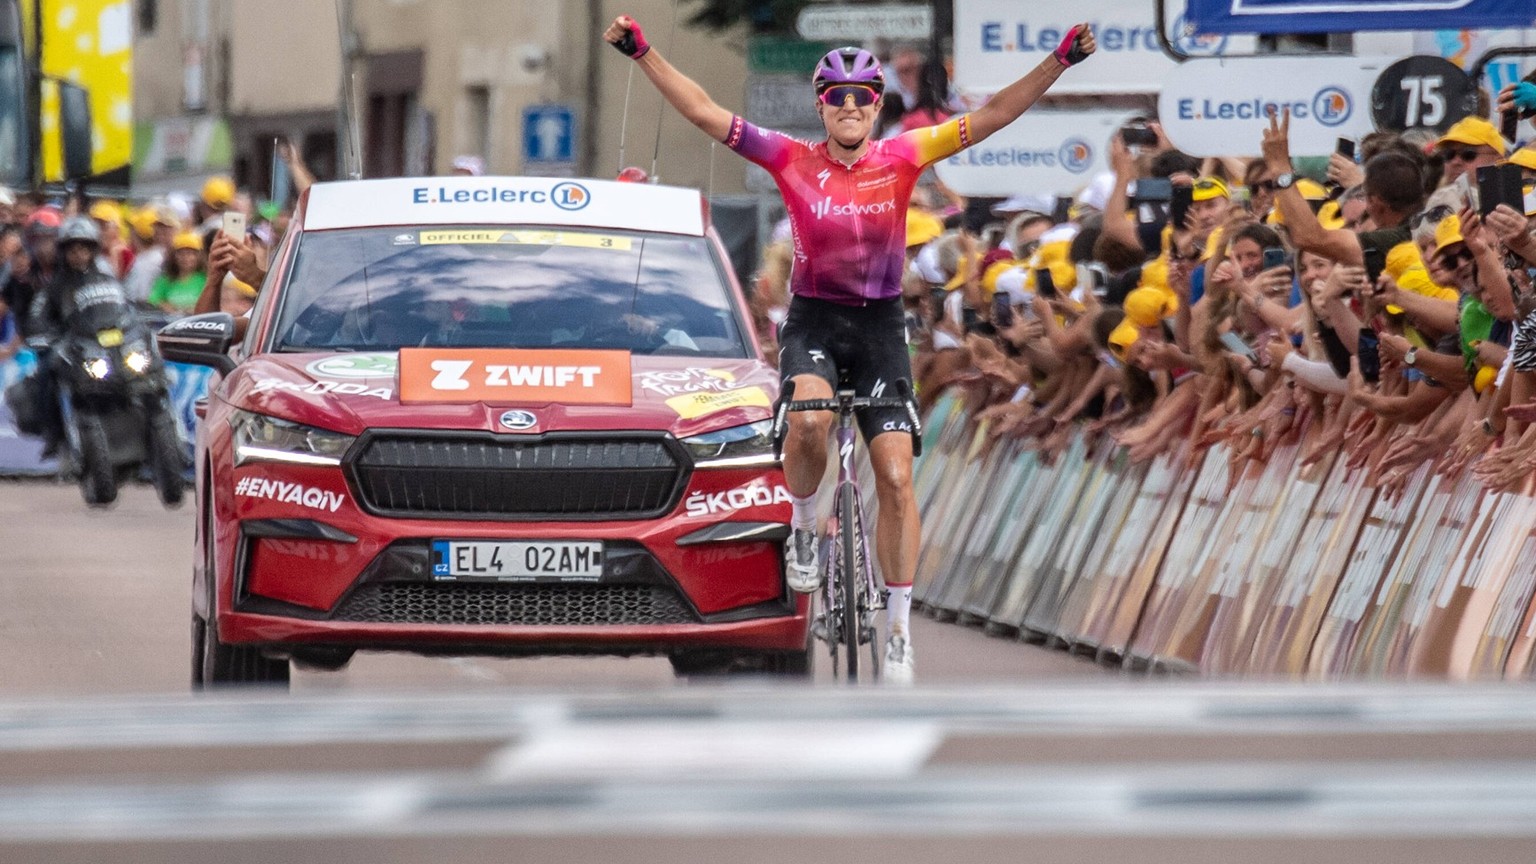 IMAGO / frontalvision.com

Marlen REUSSER 4. Etappe Tour de France Femmes 2022 Marlen REUSSER (Schweiz) Team SD Worx gewinnt die 4. Etappe Tour de France Femmes (Tour de France der Frauen) am 27. Juli ...